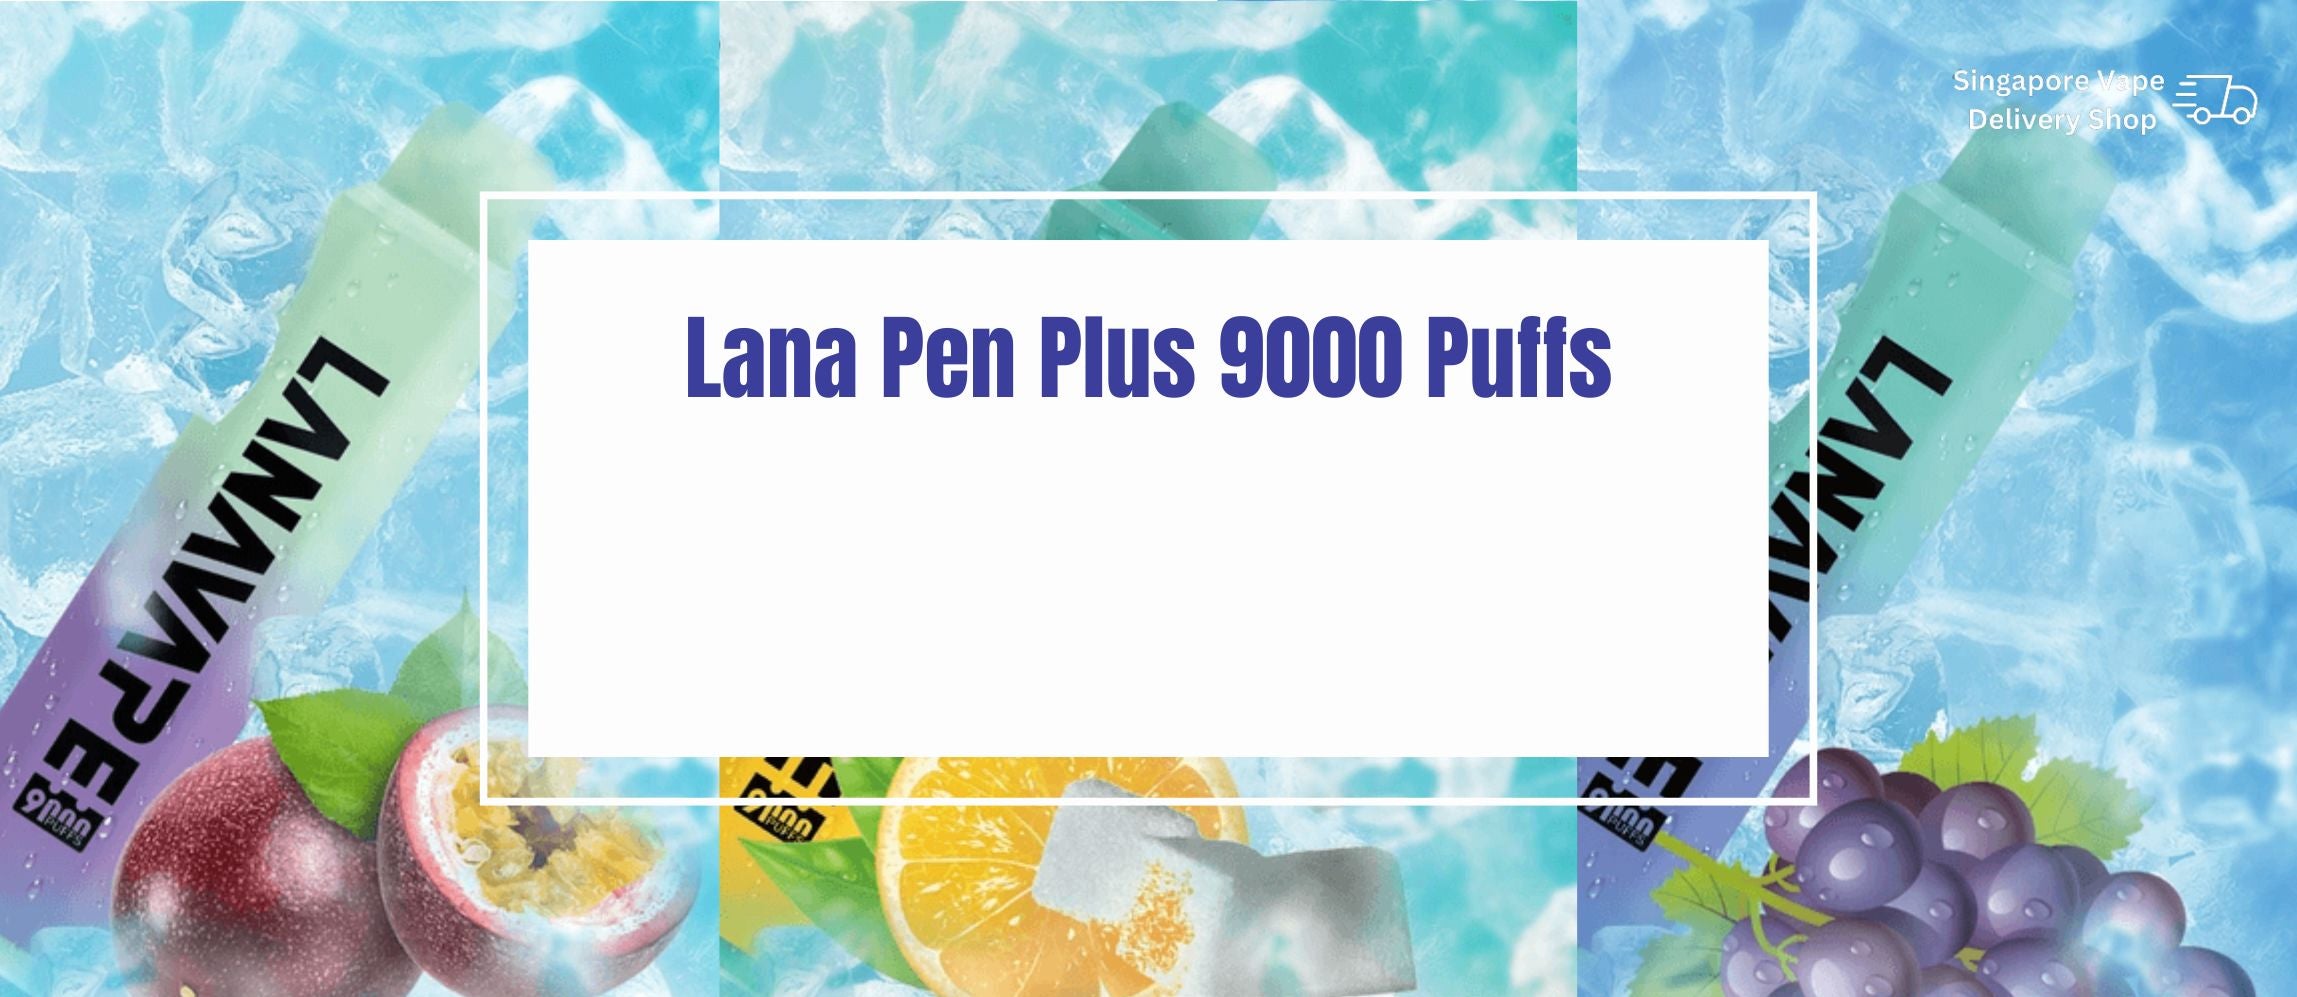 Lana-pen-plus-9000-banner